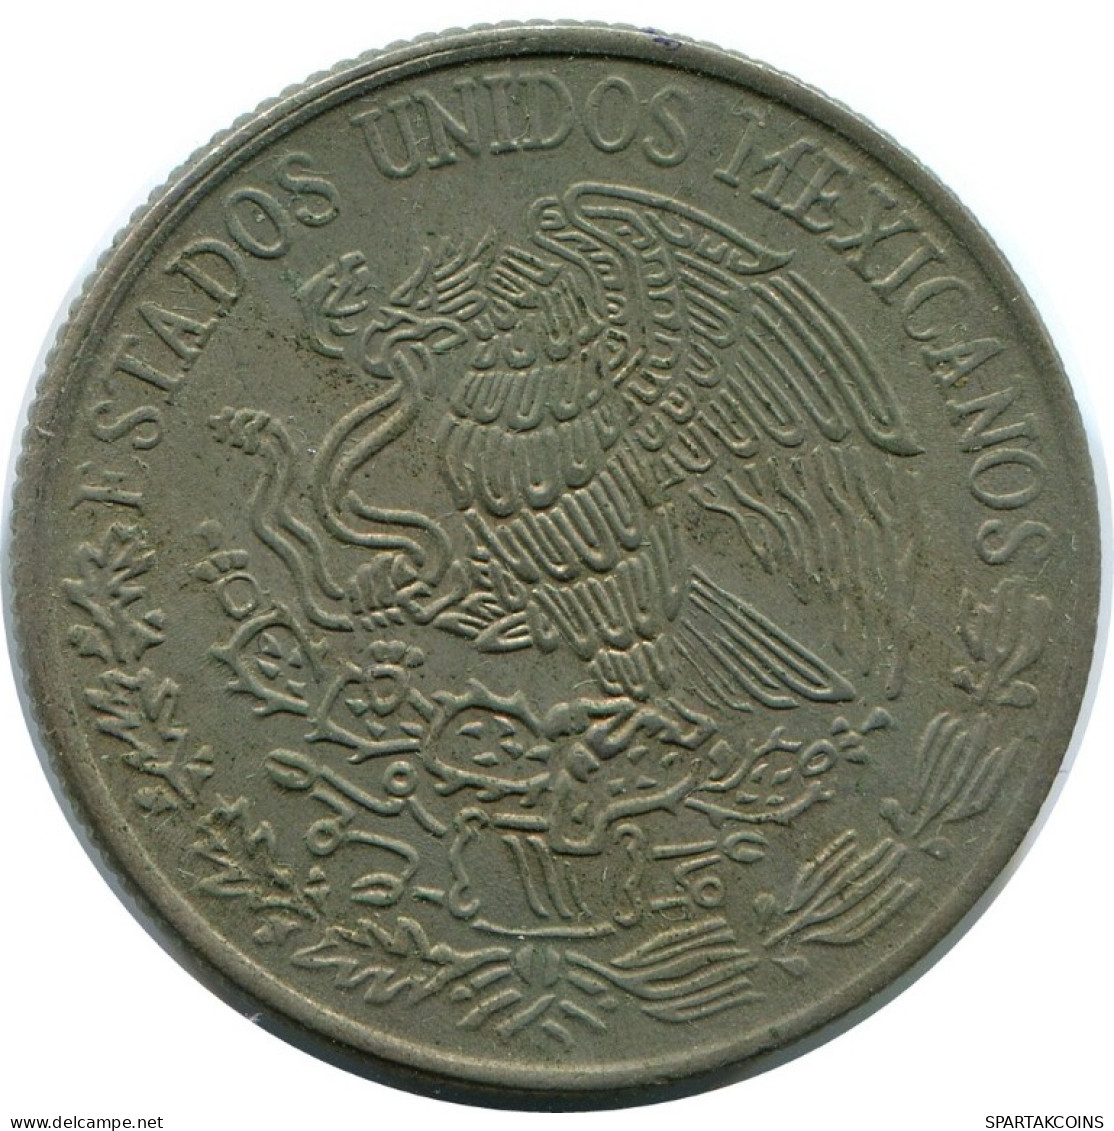 50 CENTAVOS 1980 MEXICO Coin #AH490.5.U.A - Mexiko